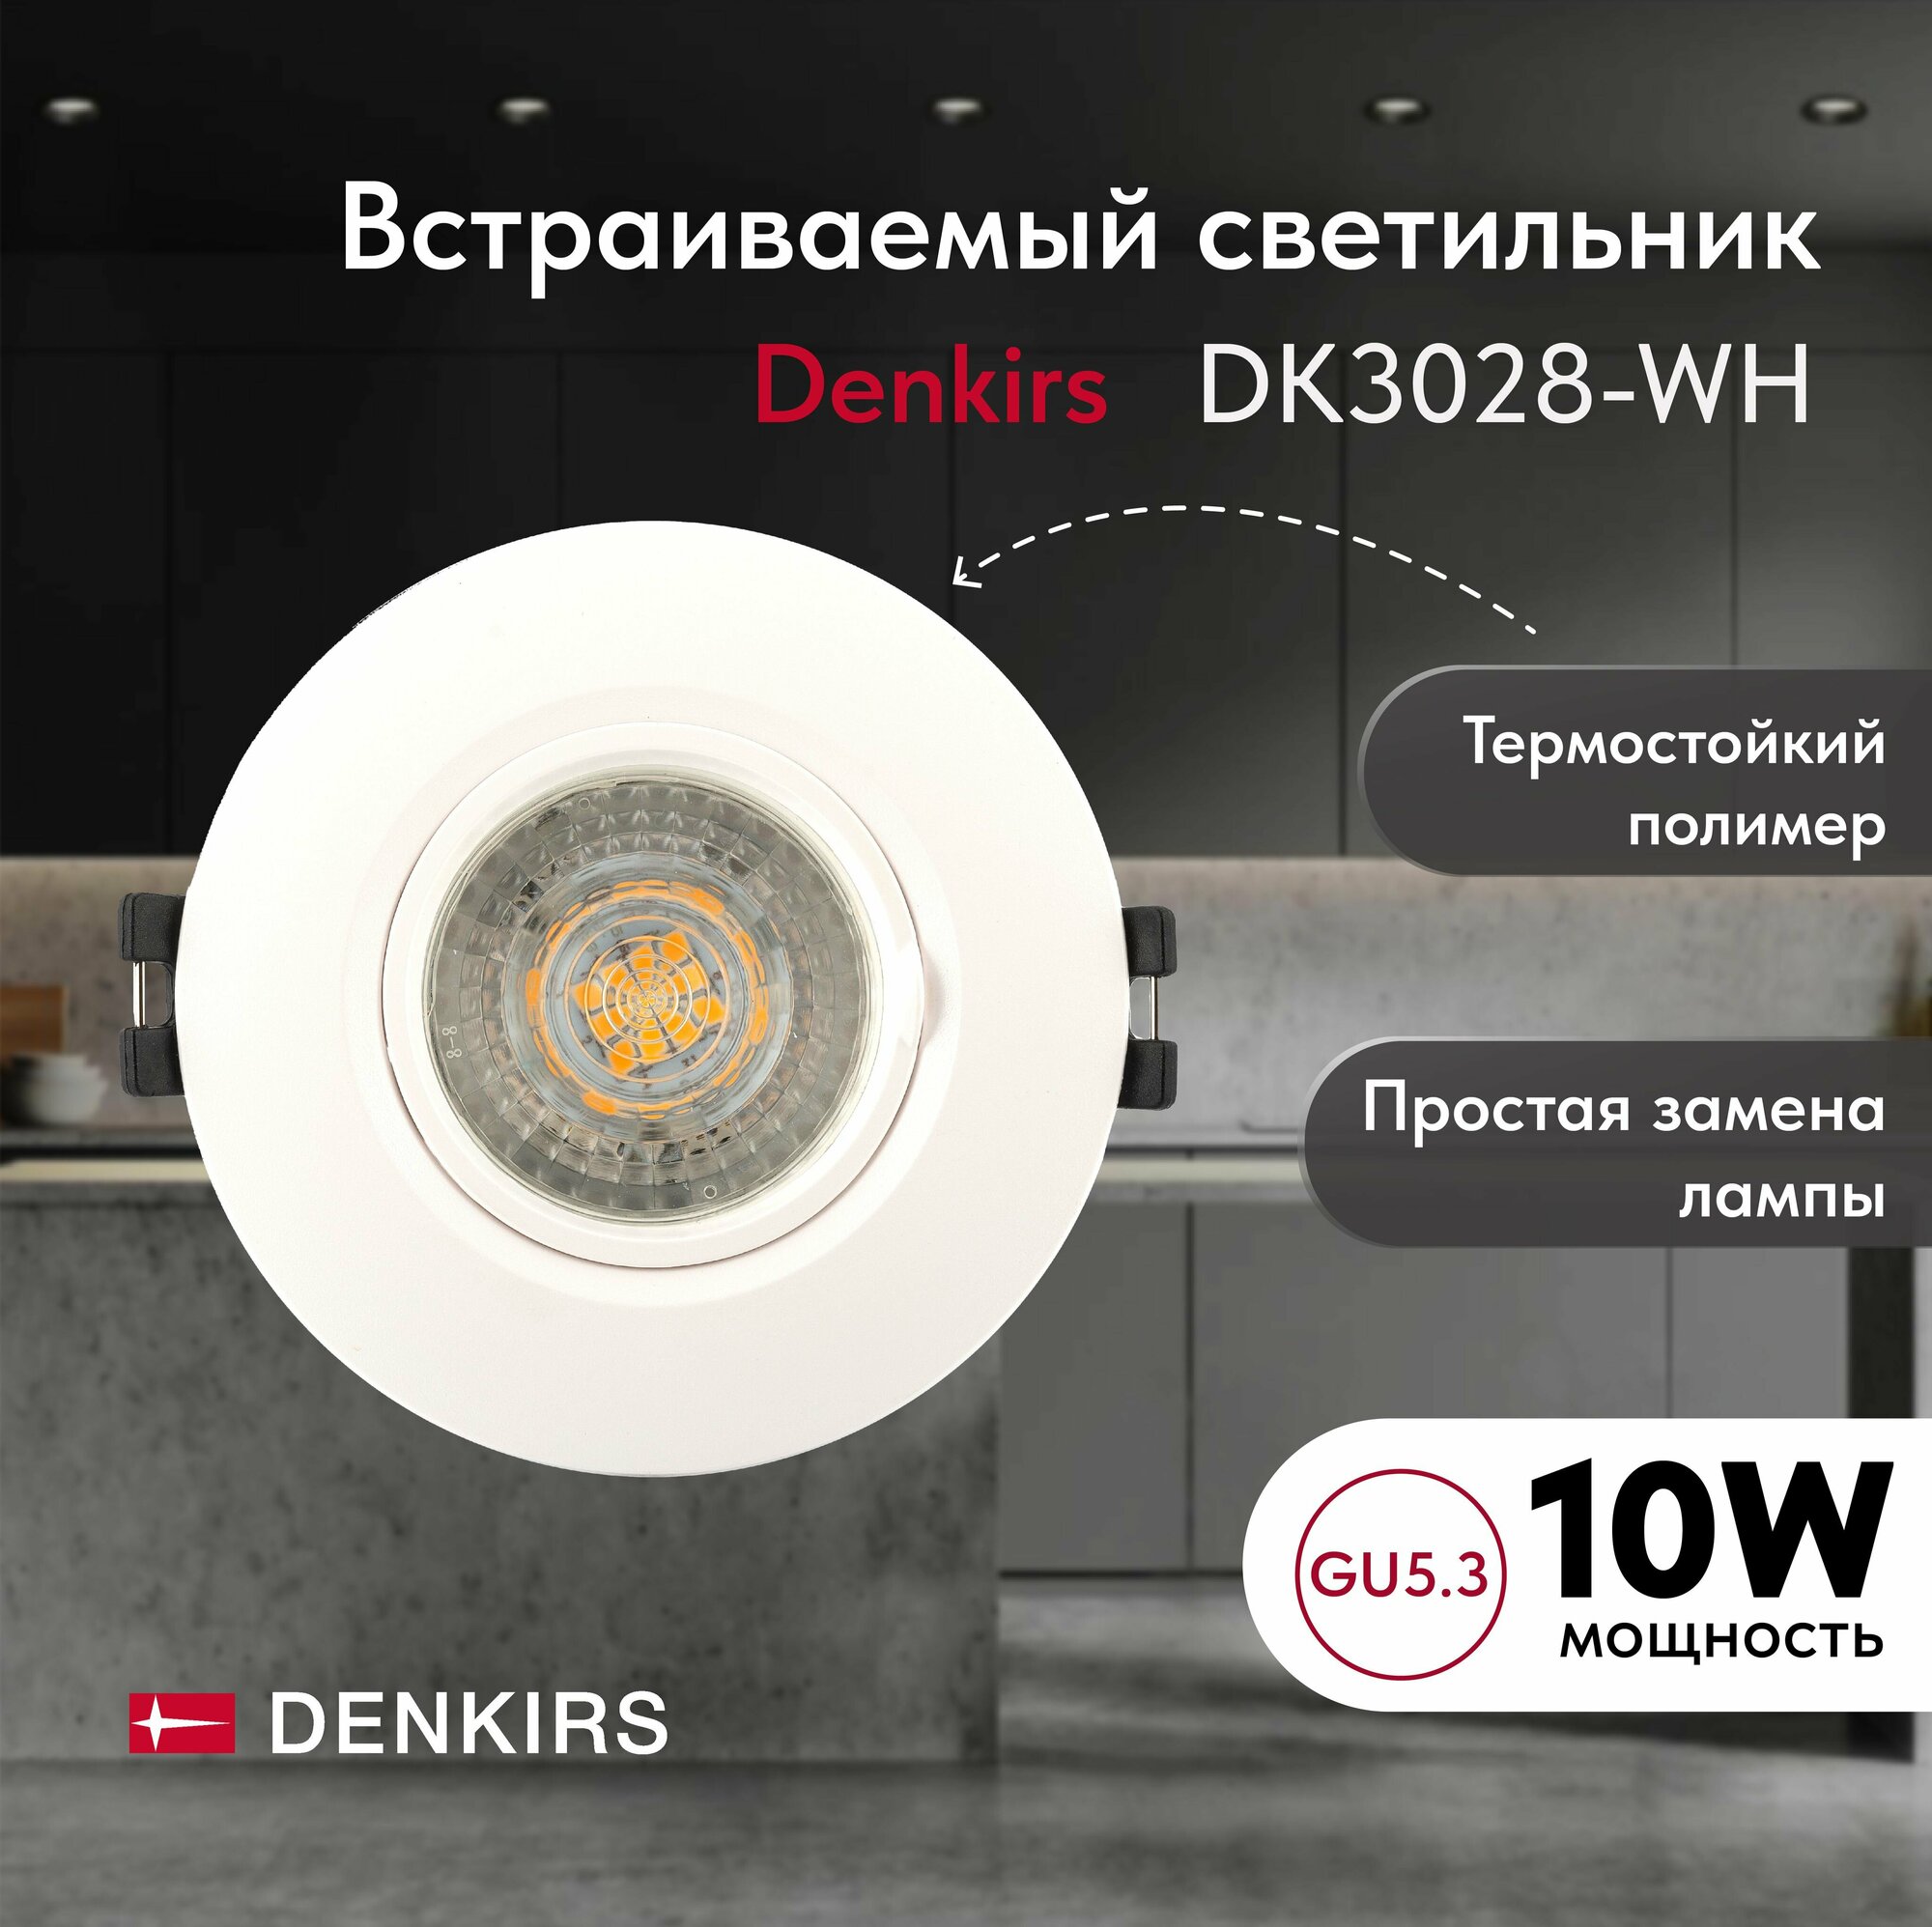 Светильник потолочный встраиваемый DENKIRS DK3028-WH, IP 20, 10 Вт, GU5.3, LED, белый, пластик